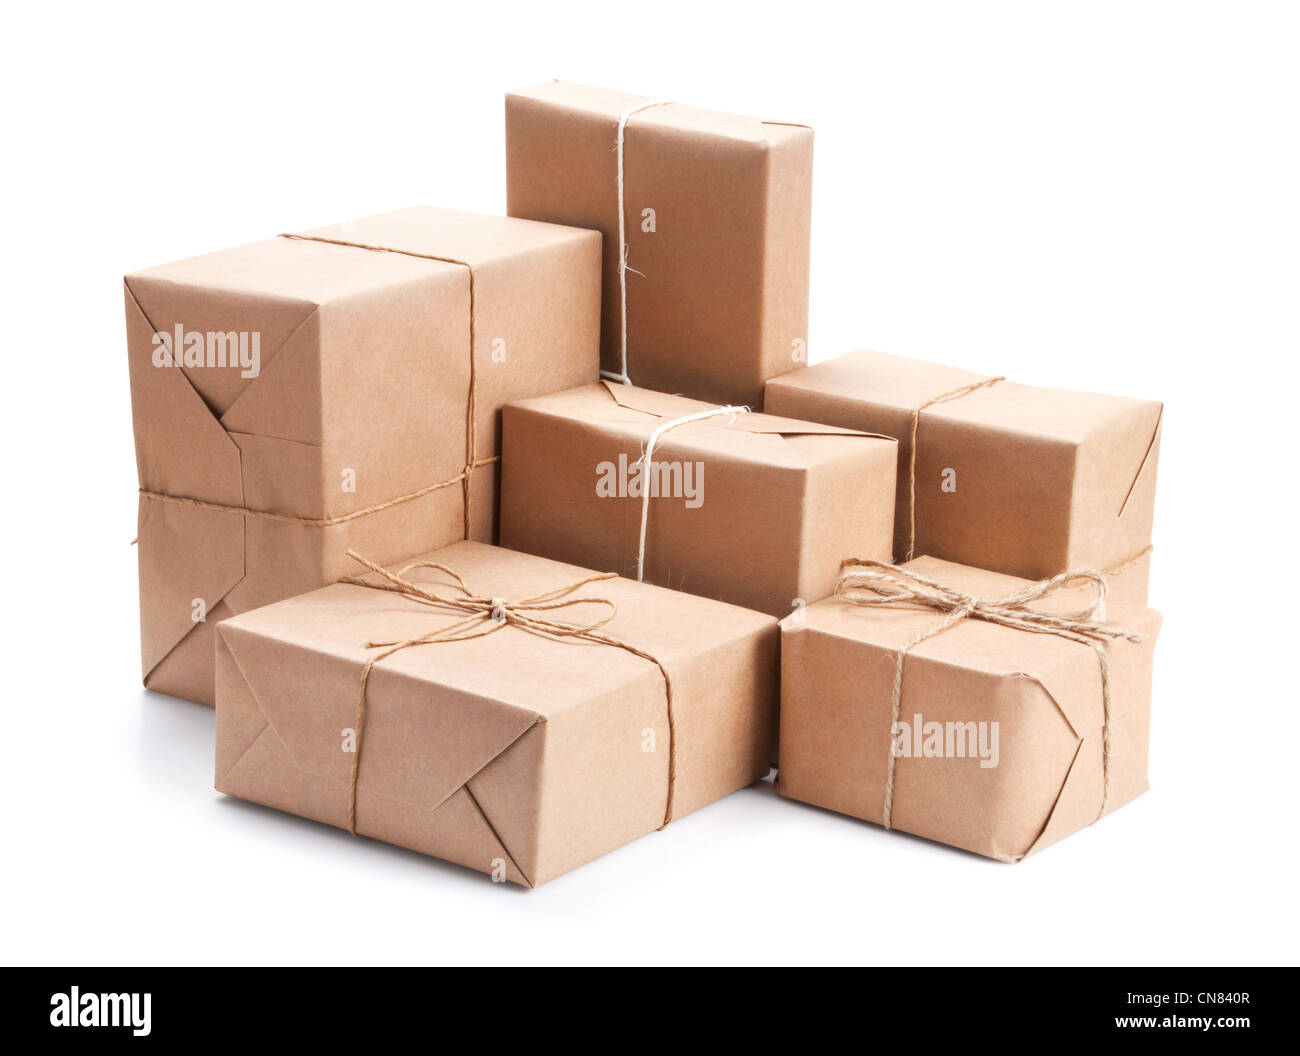 Colis emballage Banque de photographies et d'images à haute résolution -  Alamy